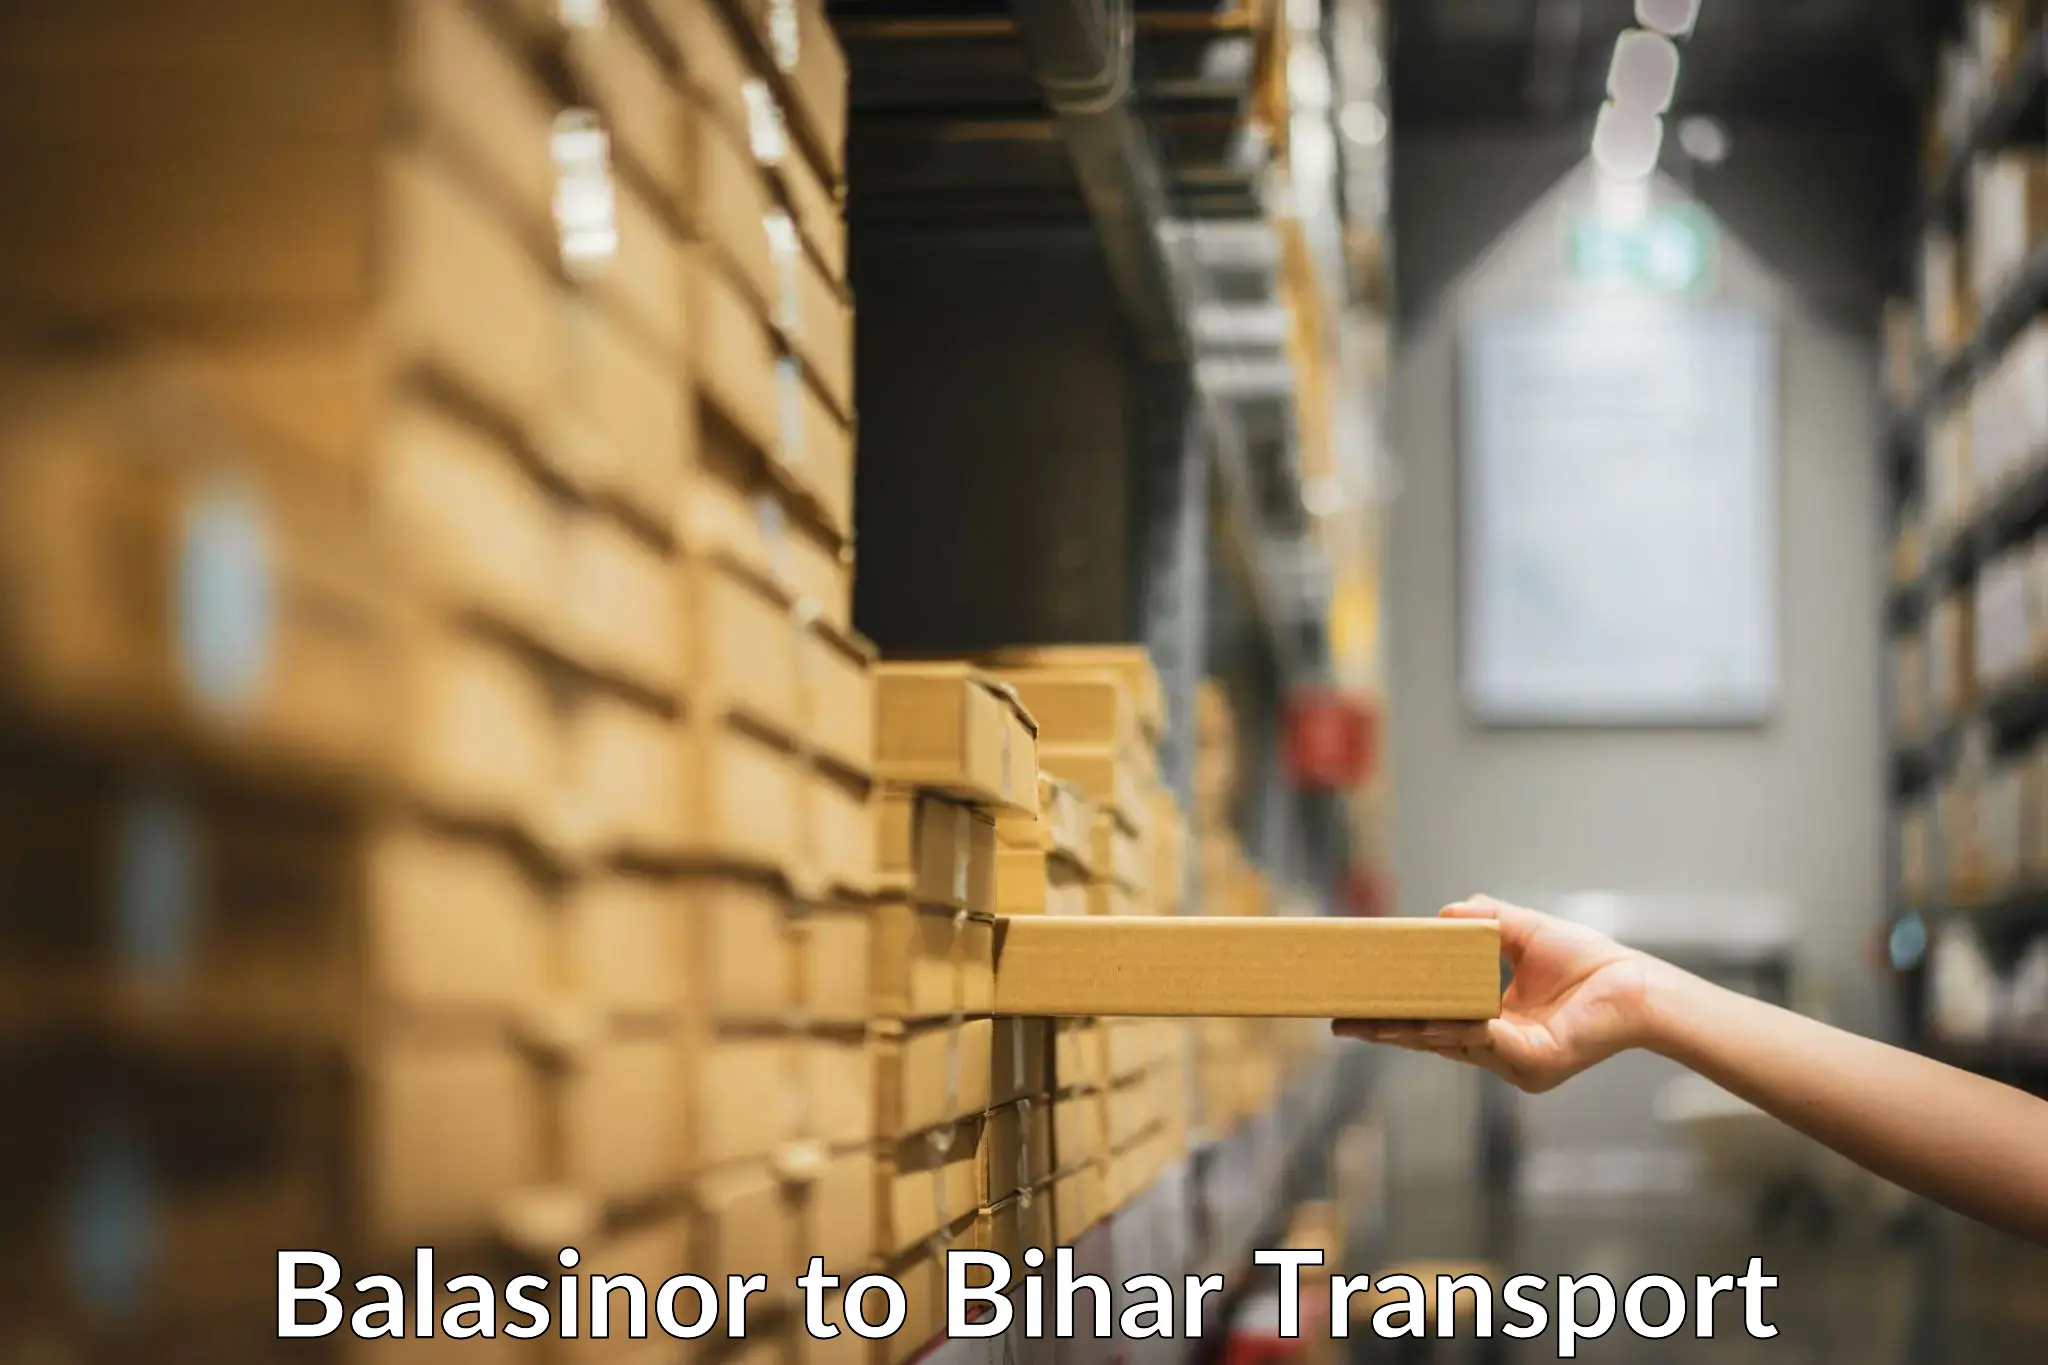 Shipping partner Balasinor to Bikramganj